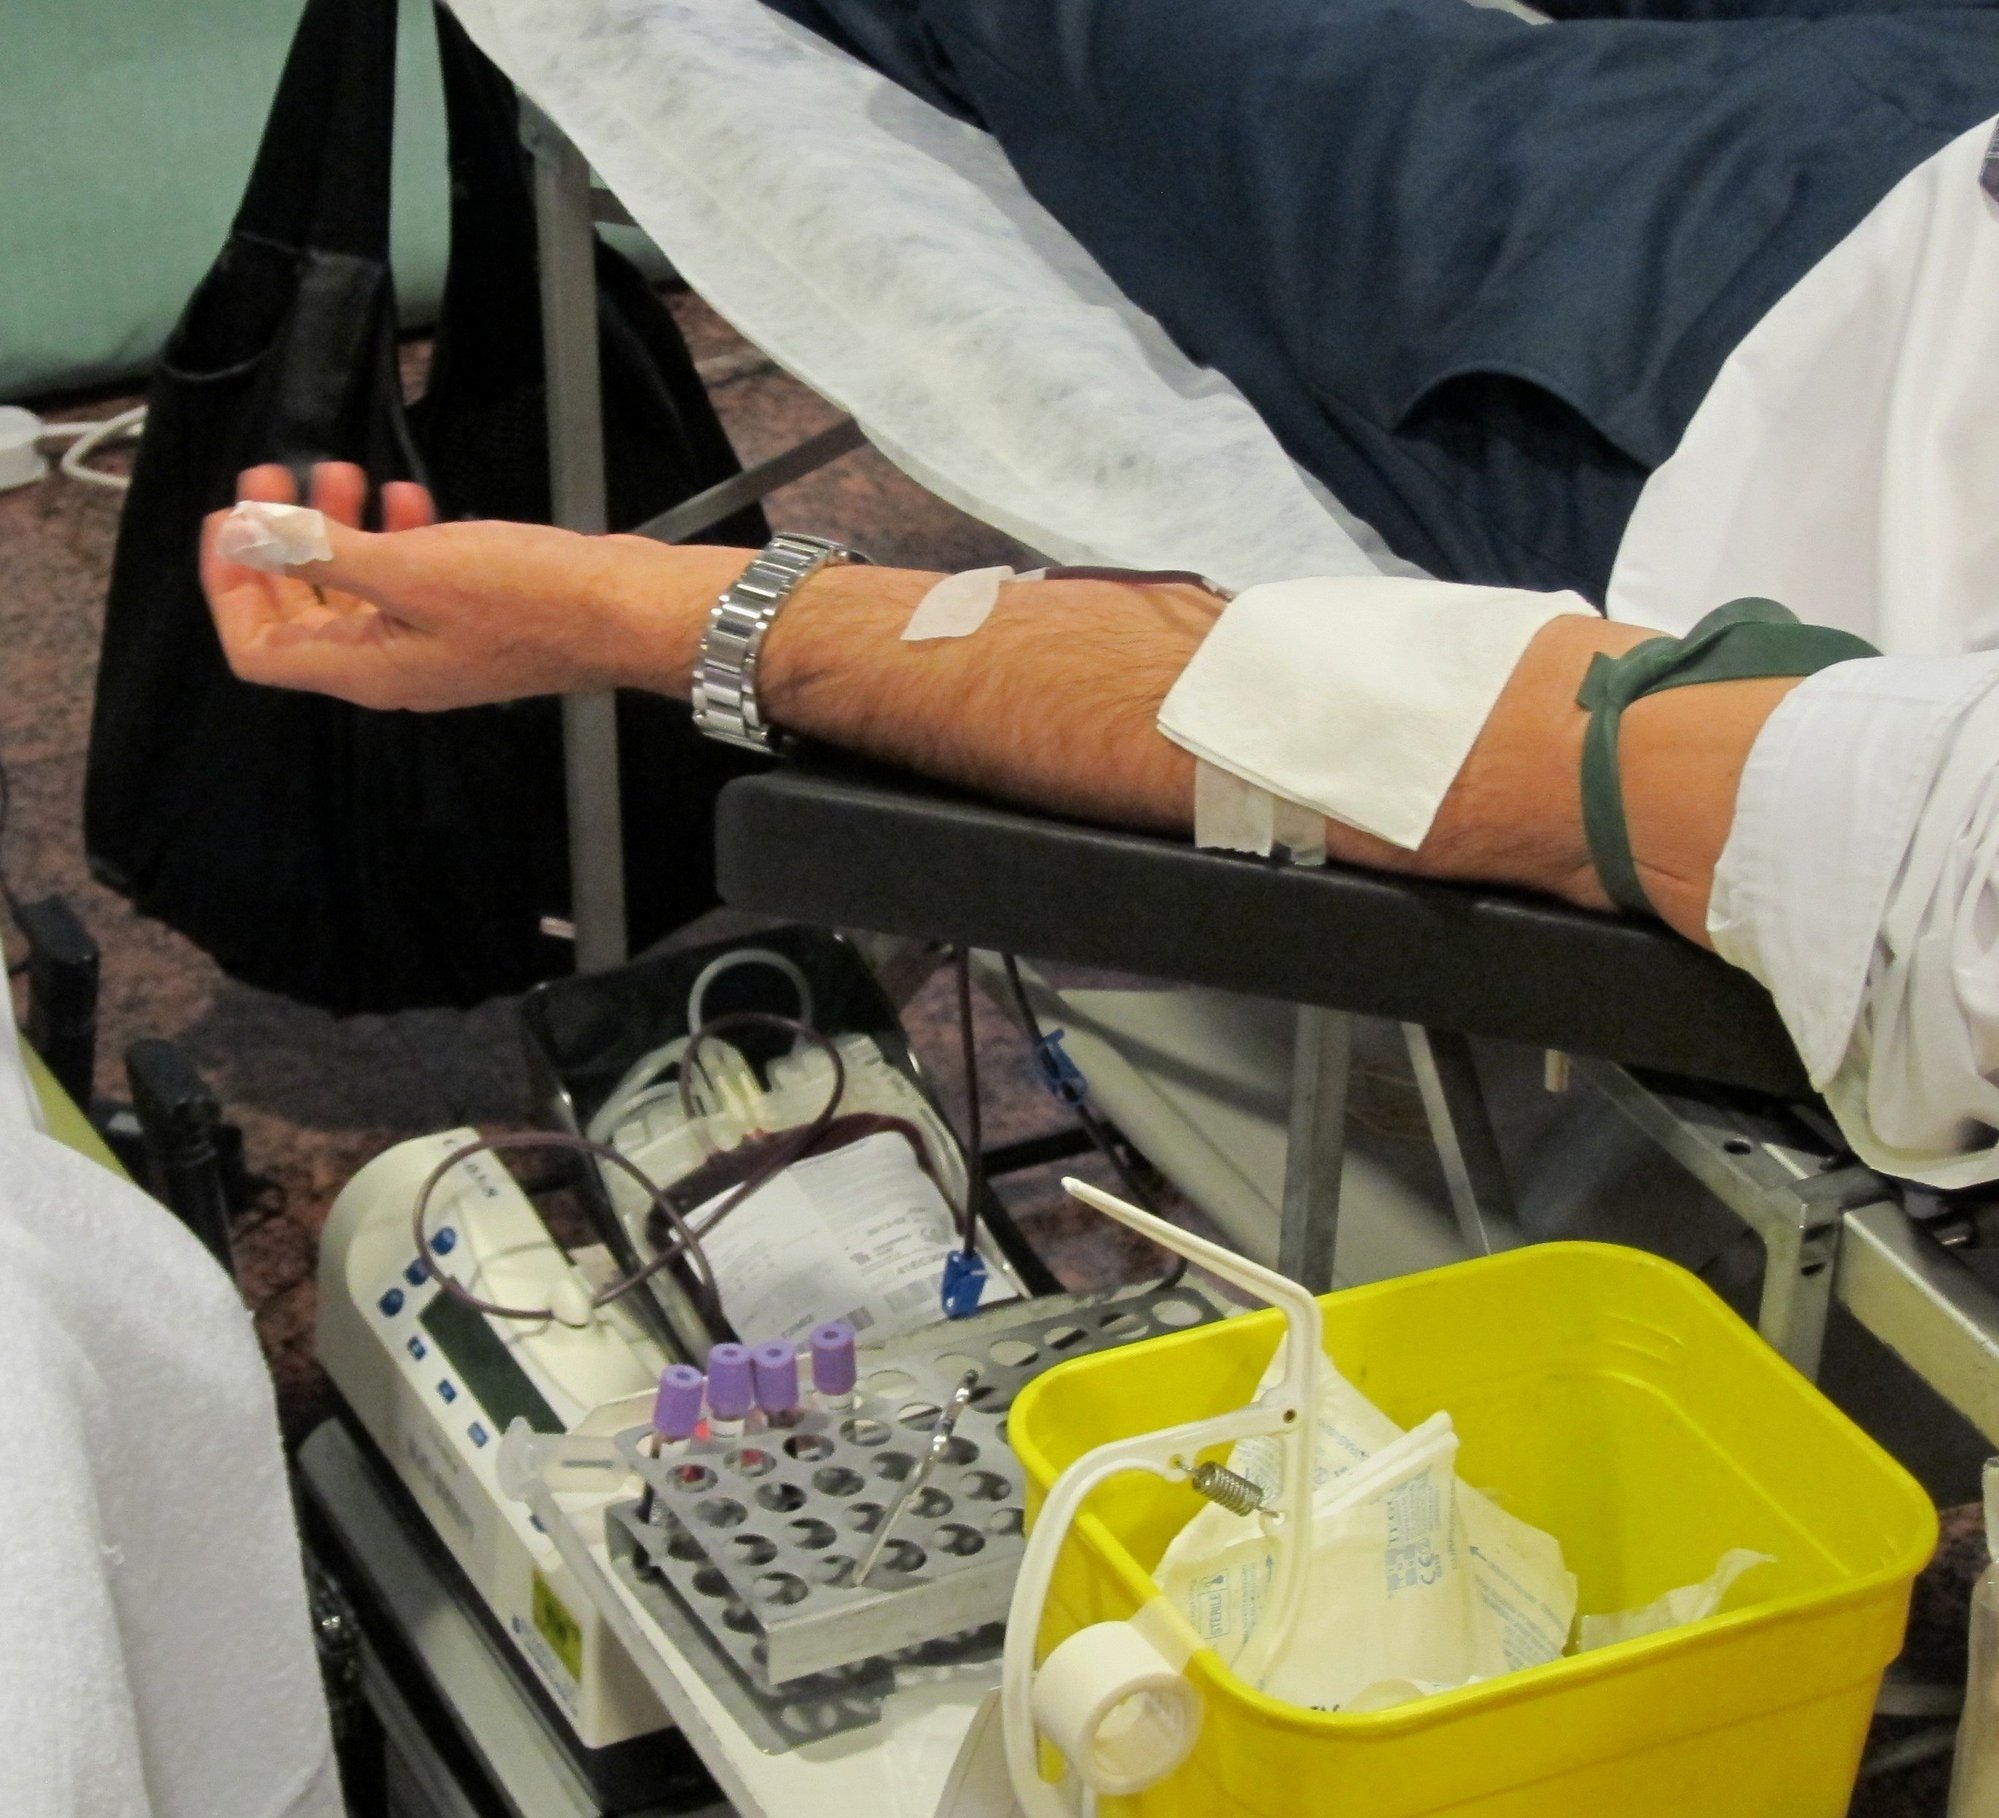 Pagar por donar sangre sería una «barbaridad» y un «atentado contra la salud»